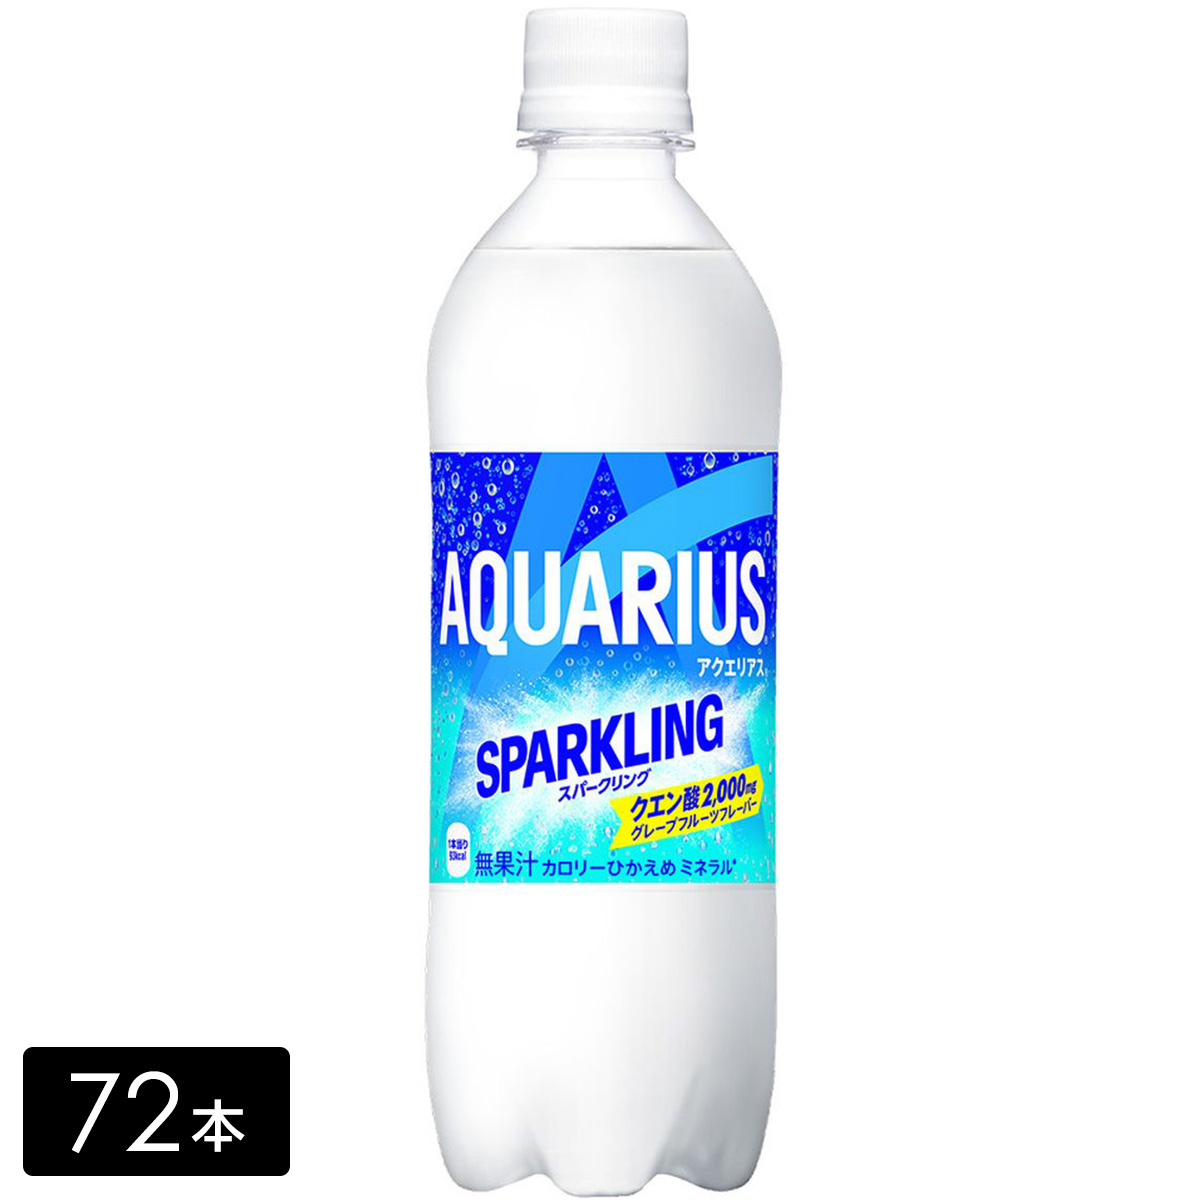 [送料無料]アクエリアス スパークリング 490ml×72本(24本×3箱) 炭酸飲料 熱中症対策 水分補給 AQUARIUS ペットボトル ケース売り まとめ買い